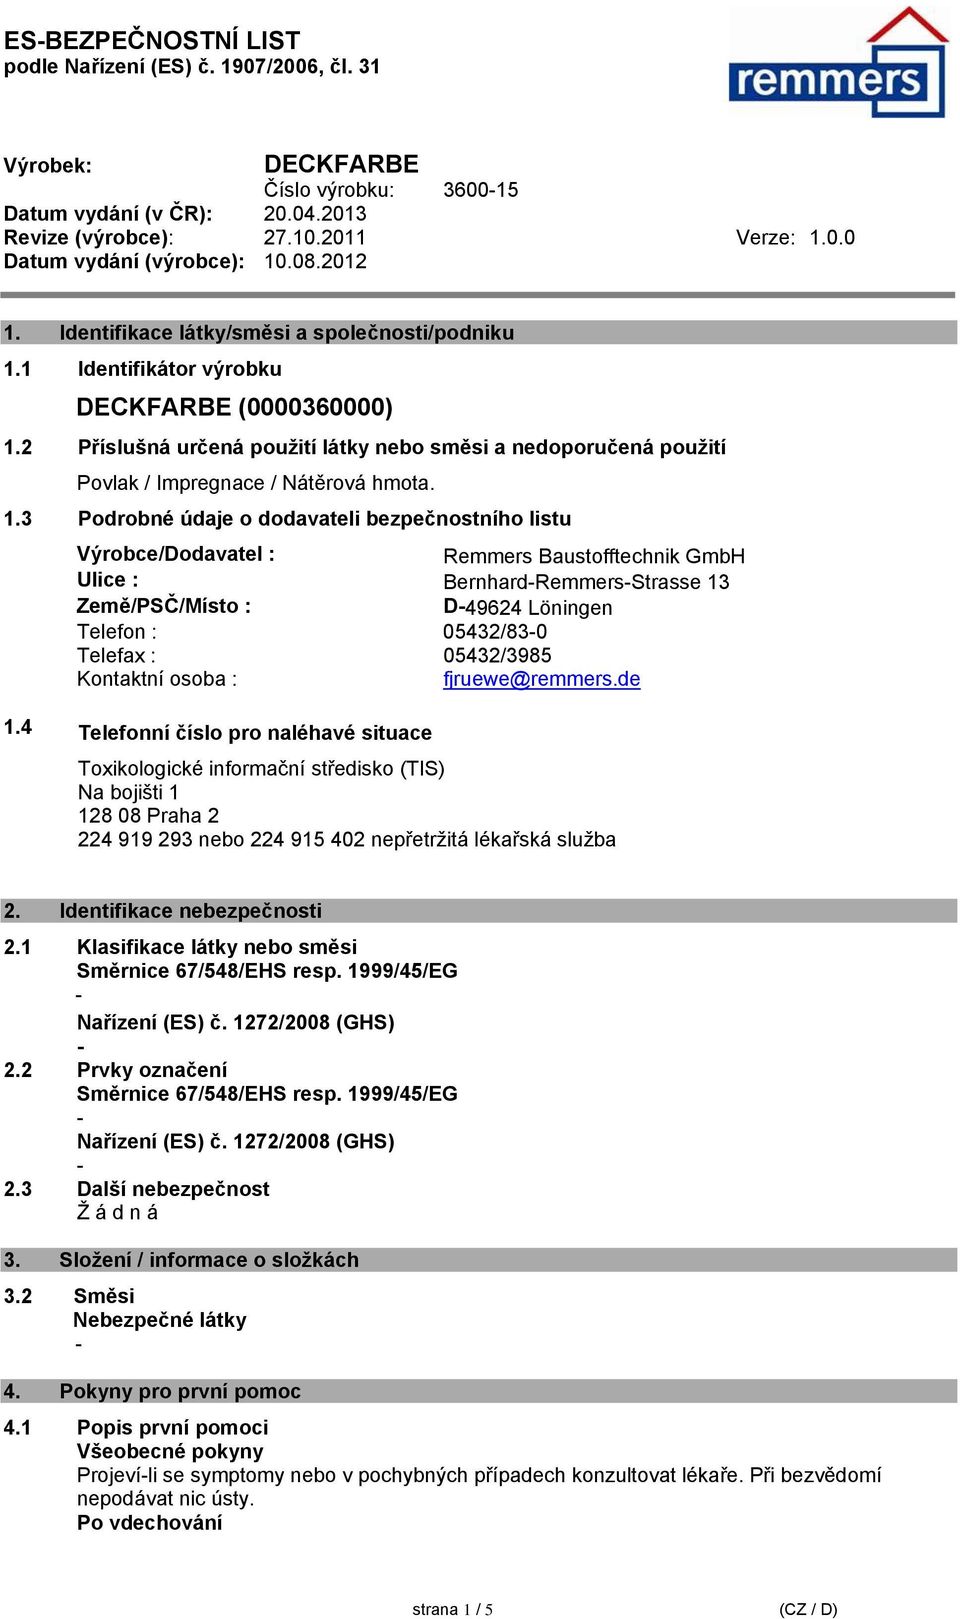 3 Podrobné údaje o dodavateli bezpečnostního listu Výrobce/Dodavatel : Remmers Baustofftechnik GmbH Ulice : BernhardRemmersStrasse 13 Země/PSČ/Místo : D49624 Löningen Telefon : 05432/830 Telefax :